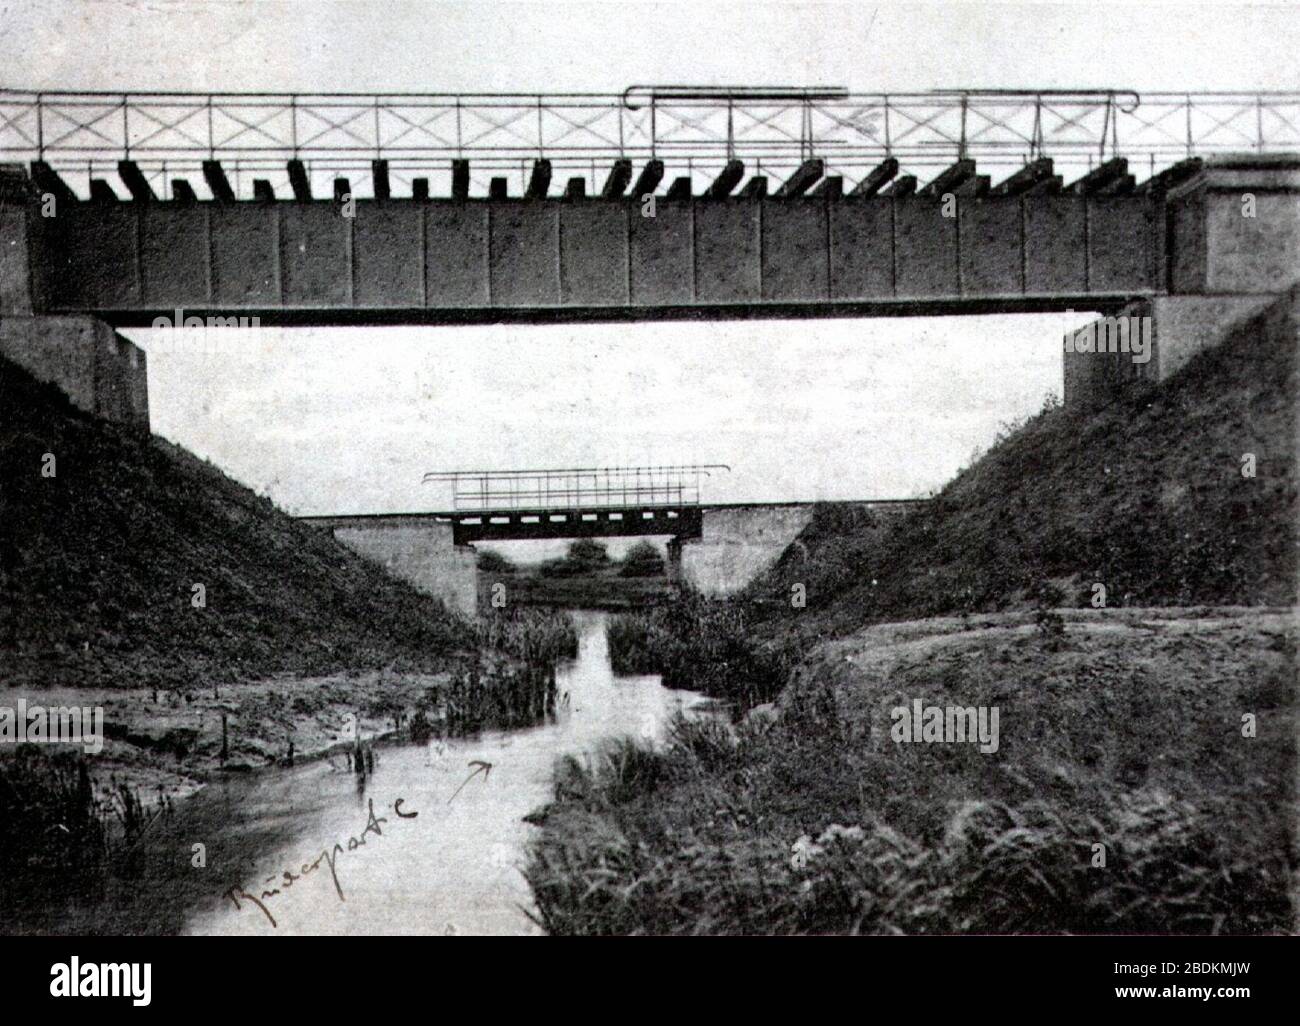 Gülzow - Eisenbahnbrücke 2. Stock Photo